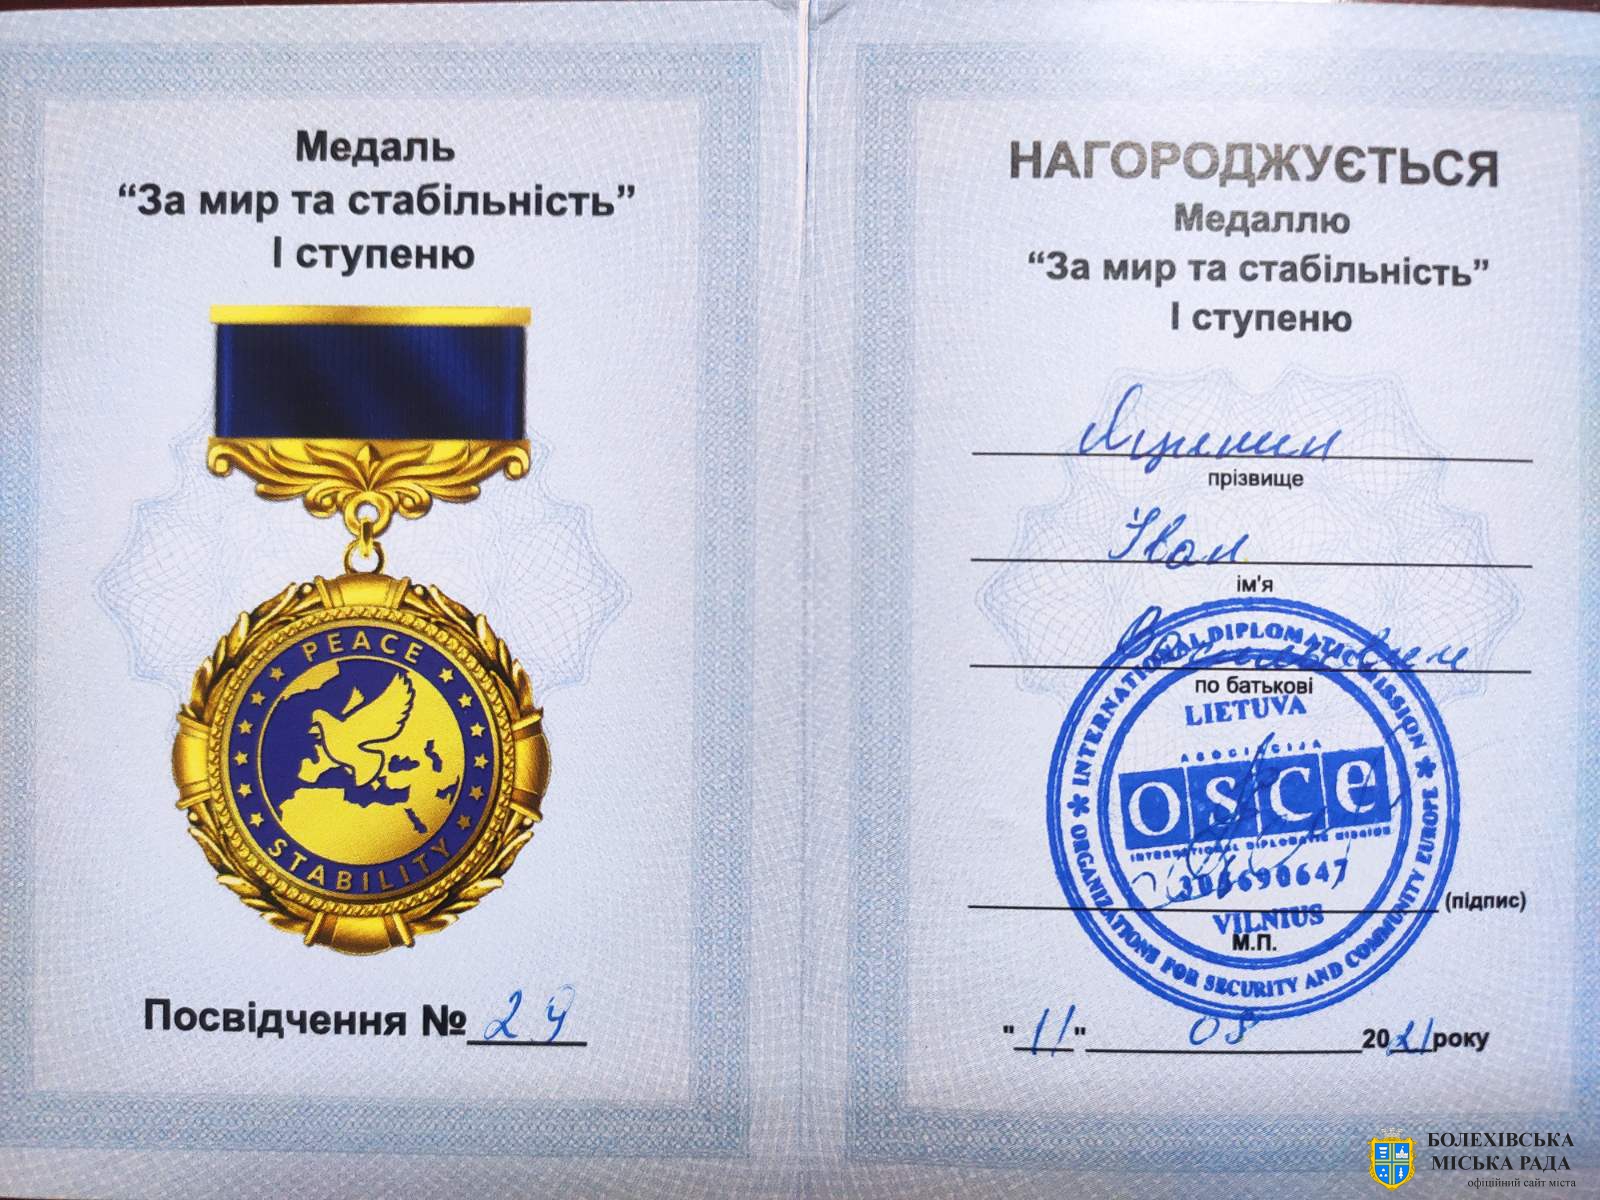 Міський голова Іван Яцинин нагороджений орденом Міжнародної Дипломатичної Місії "ОБСЕ"